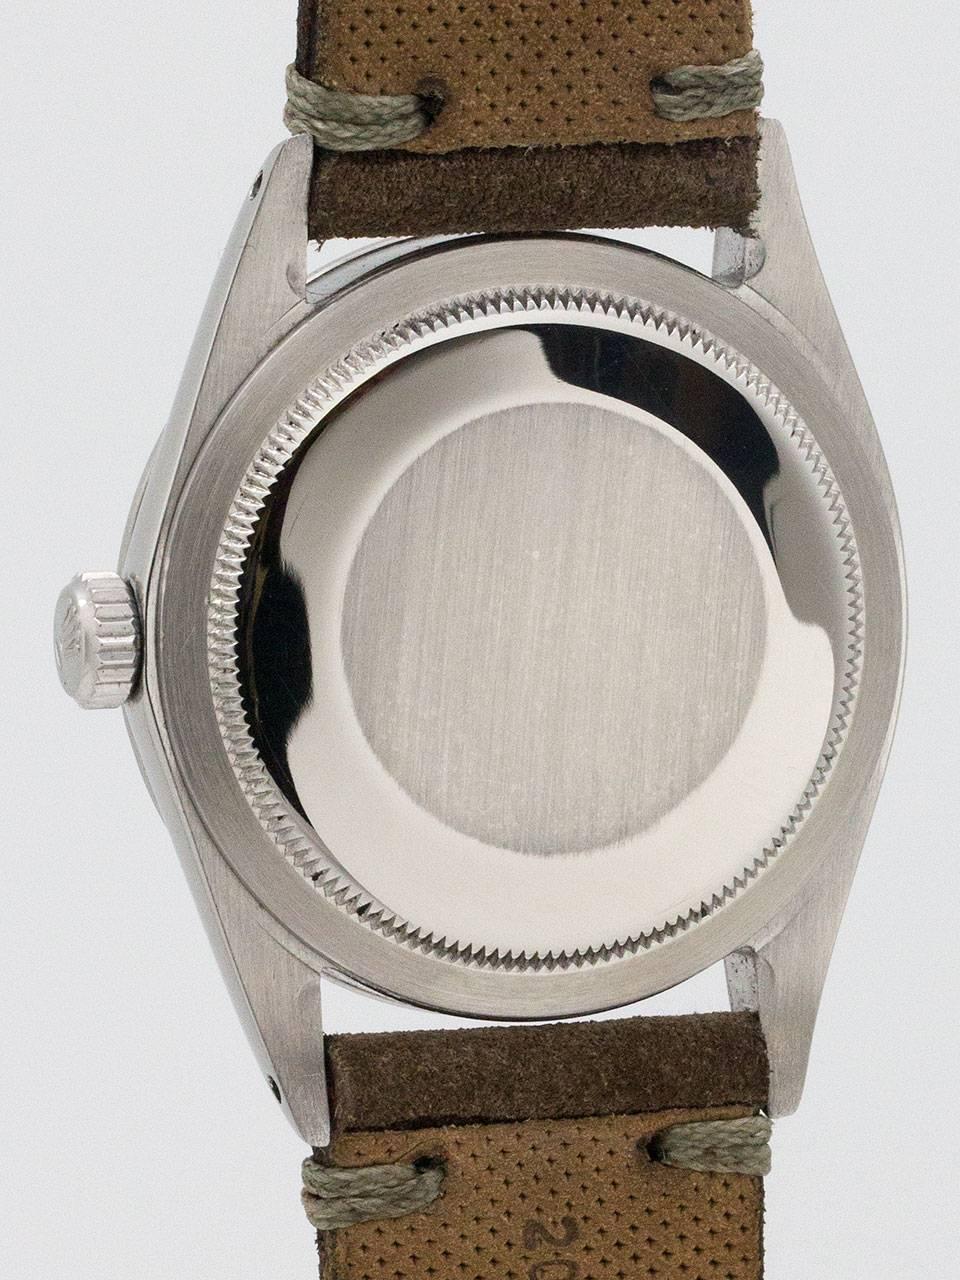 Men's Rolex Stainless Steel Explorer 1 Wristwatch ref 1016 circa 1969